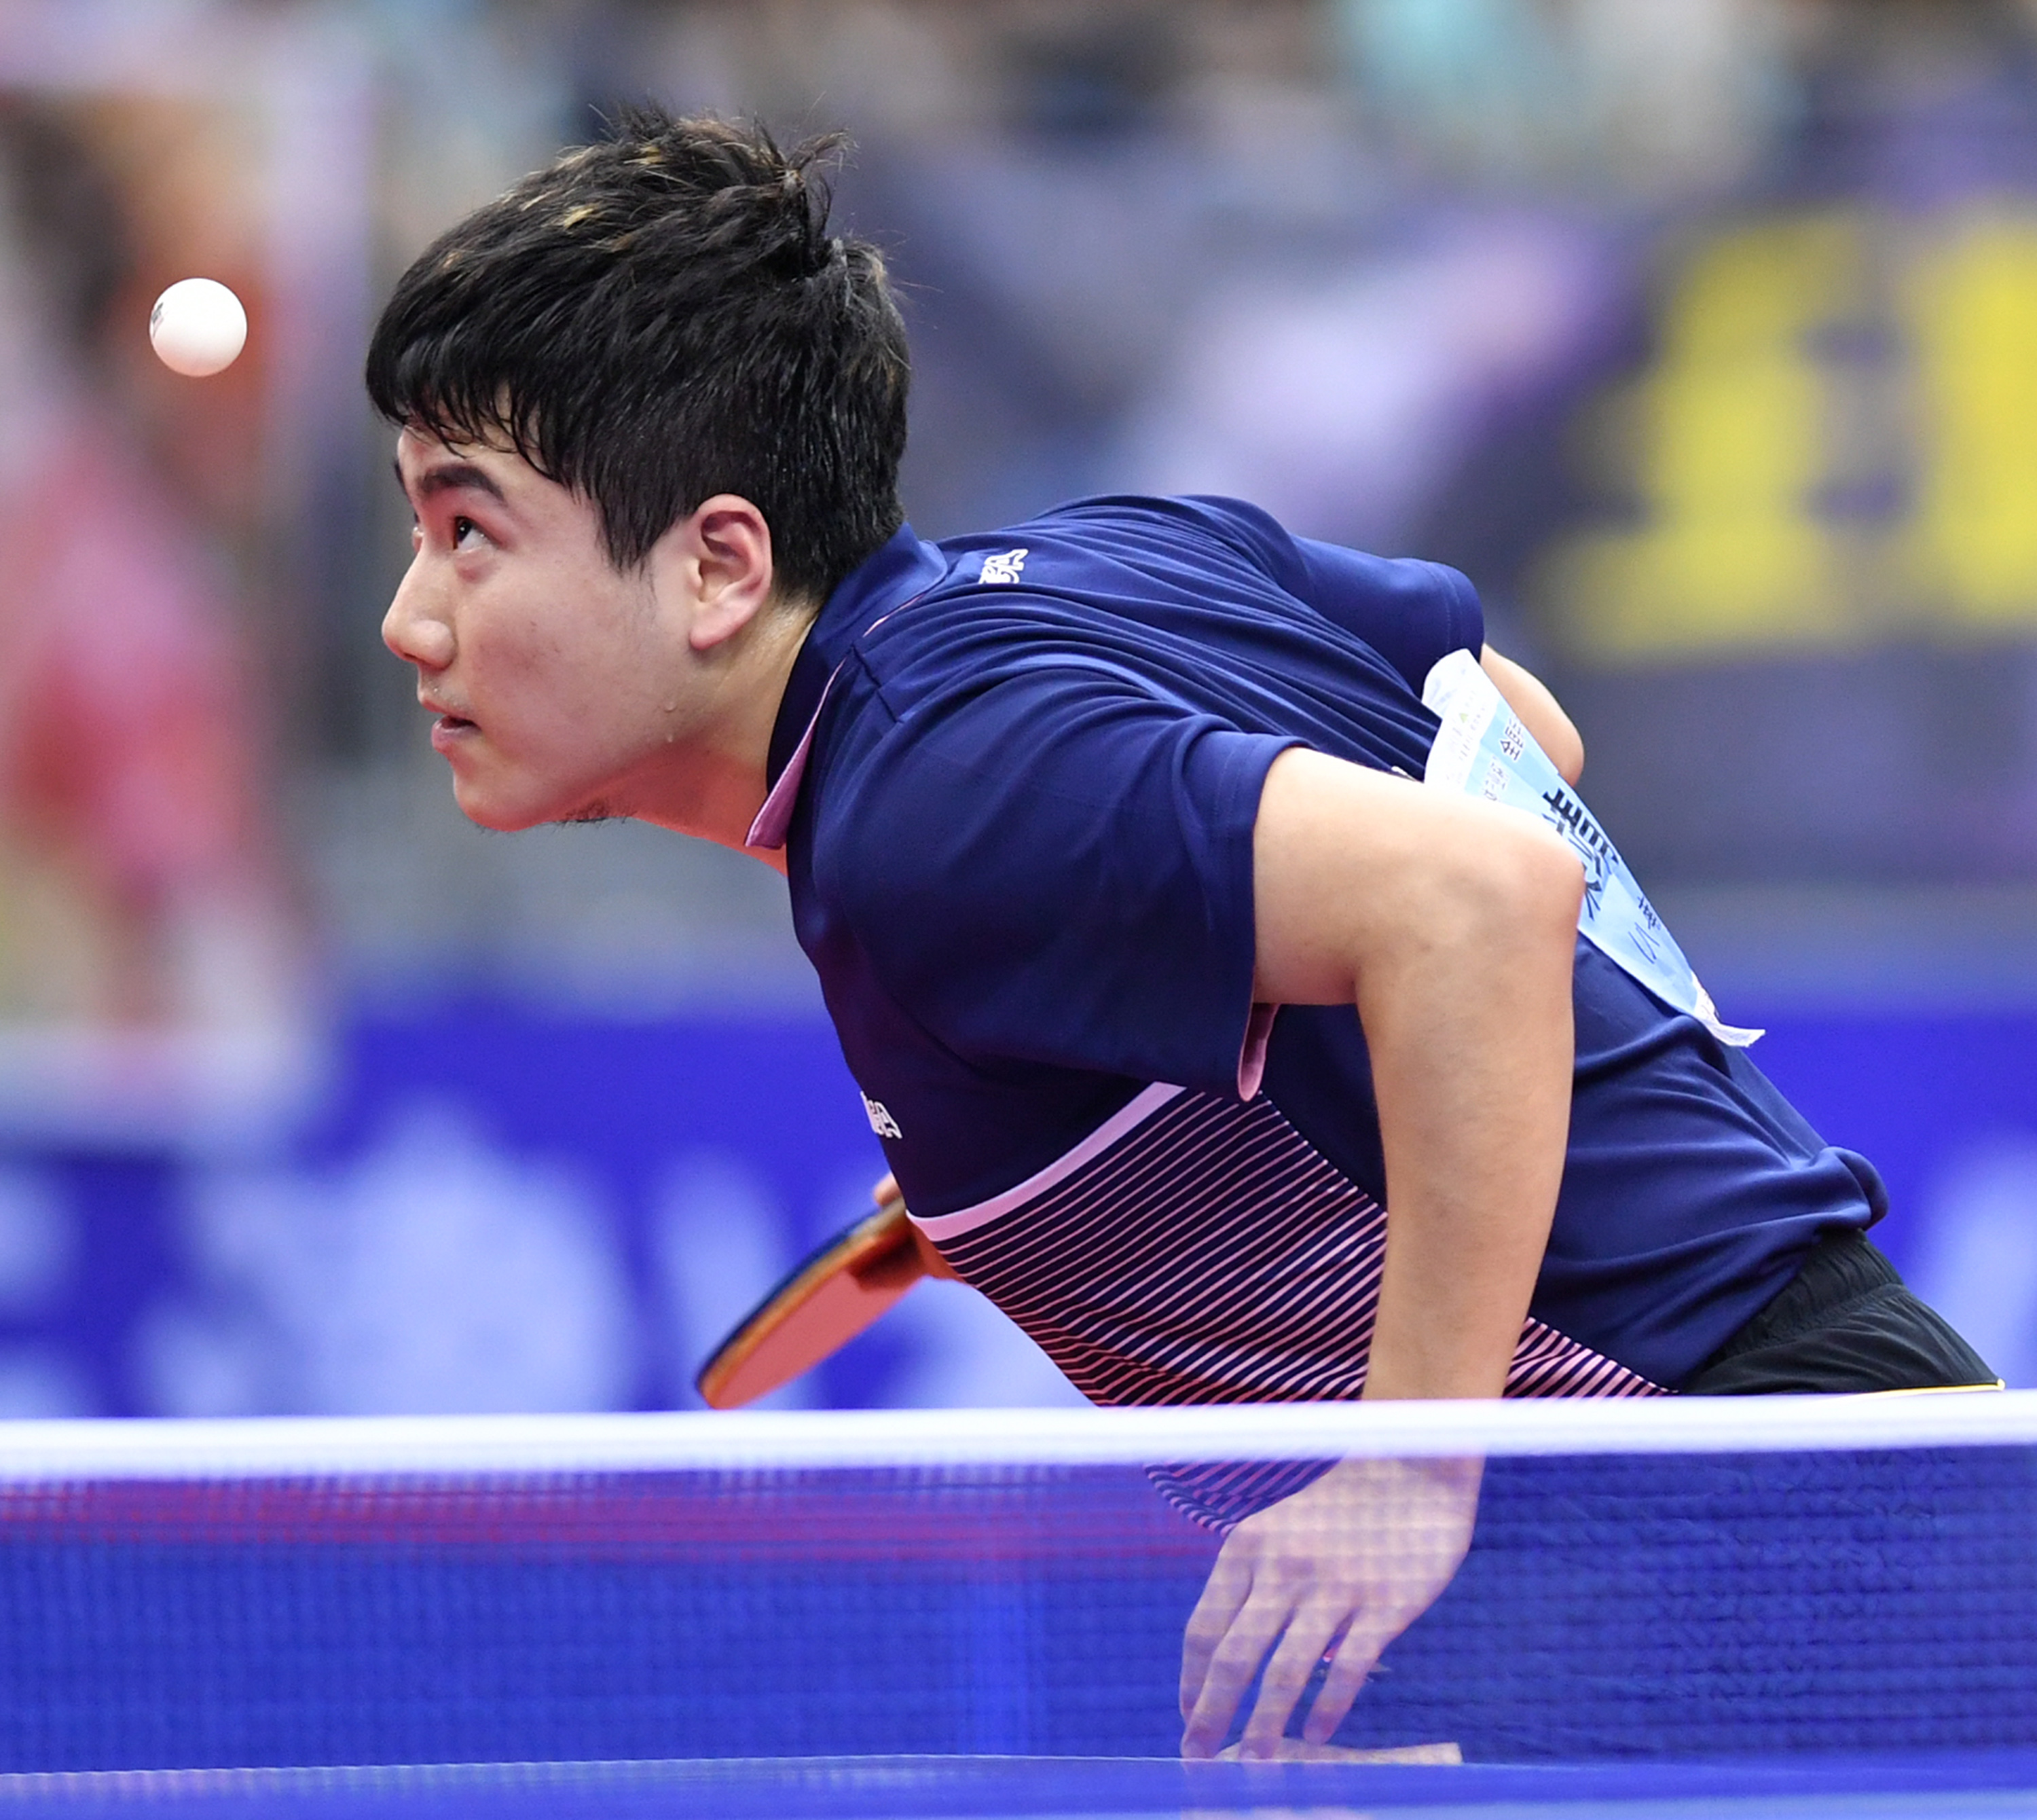 当日,在天津武清举行的2019年全国乒乓球锦标赛男子单打四分之一决赛